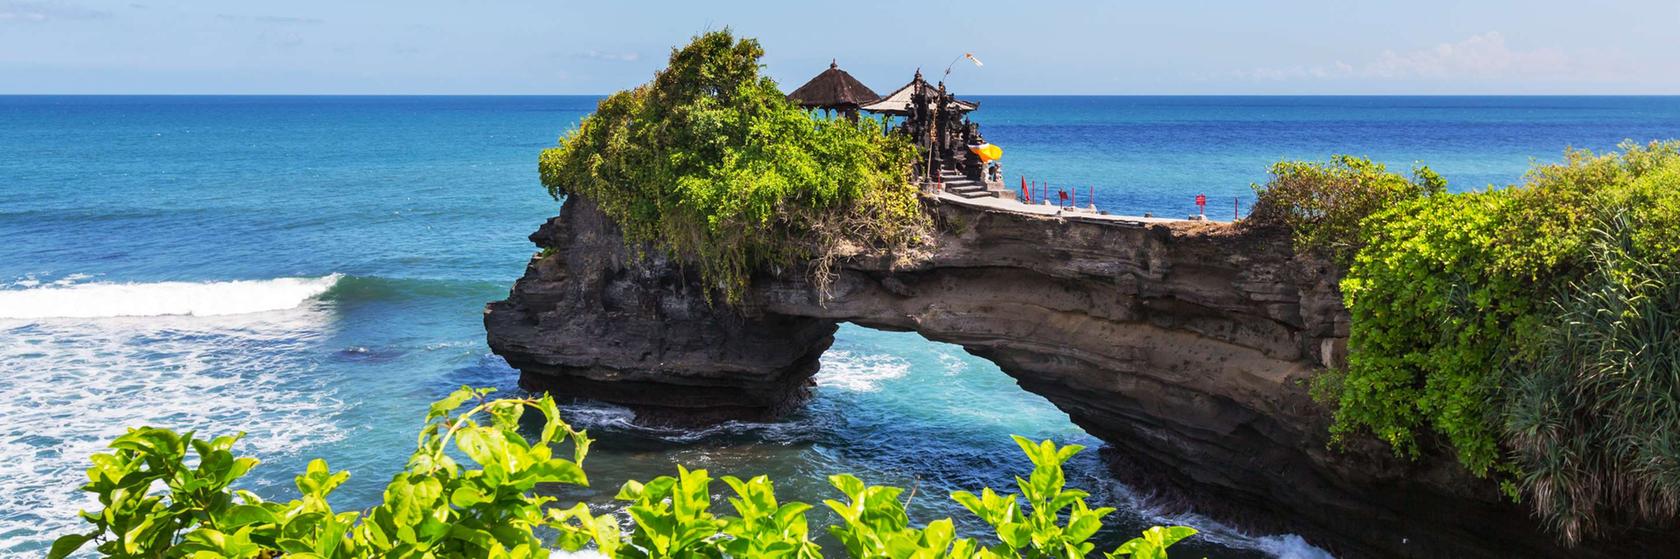 Počasí a kdy jet  na Bali